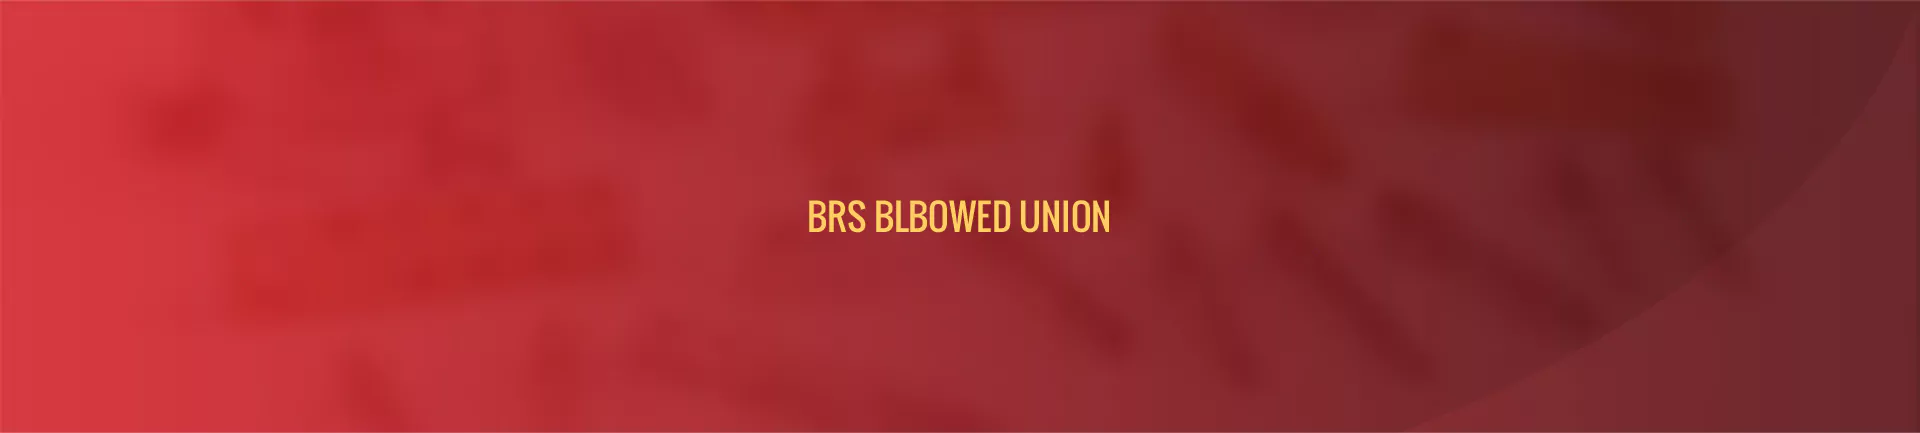 brs_blbowed_union-banner